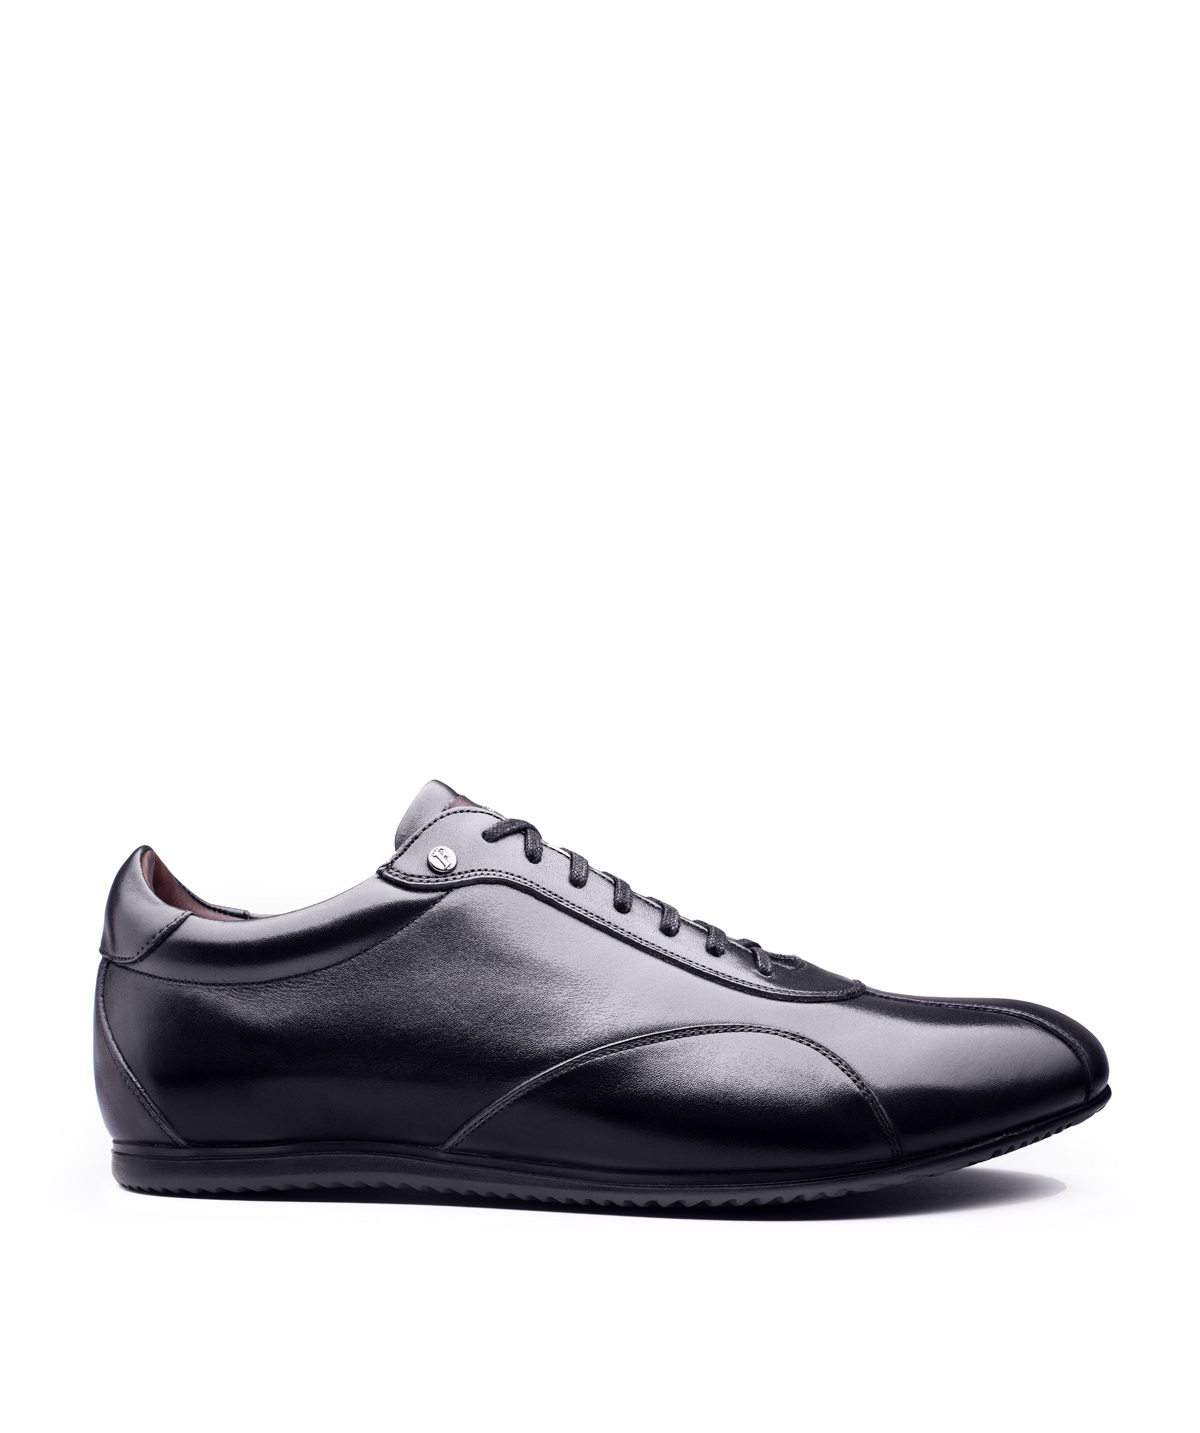 Sneaker Copan Noir pour Homme - Finsbury Shoes